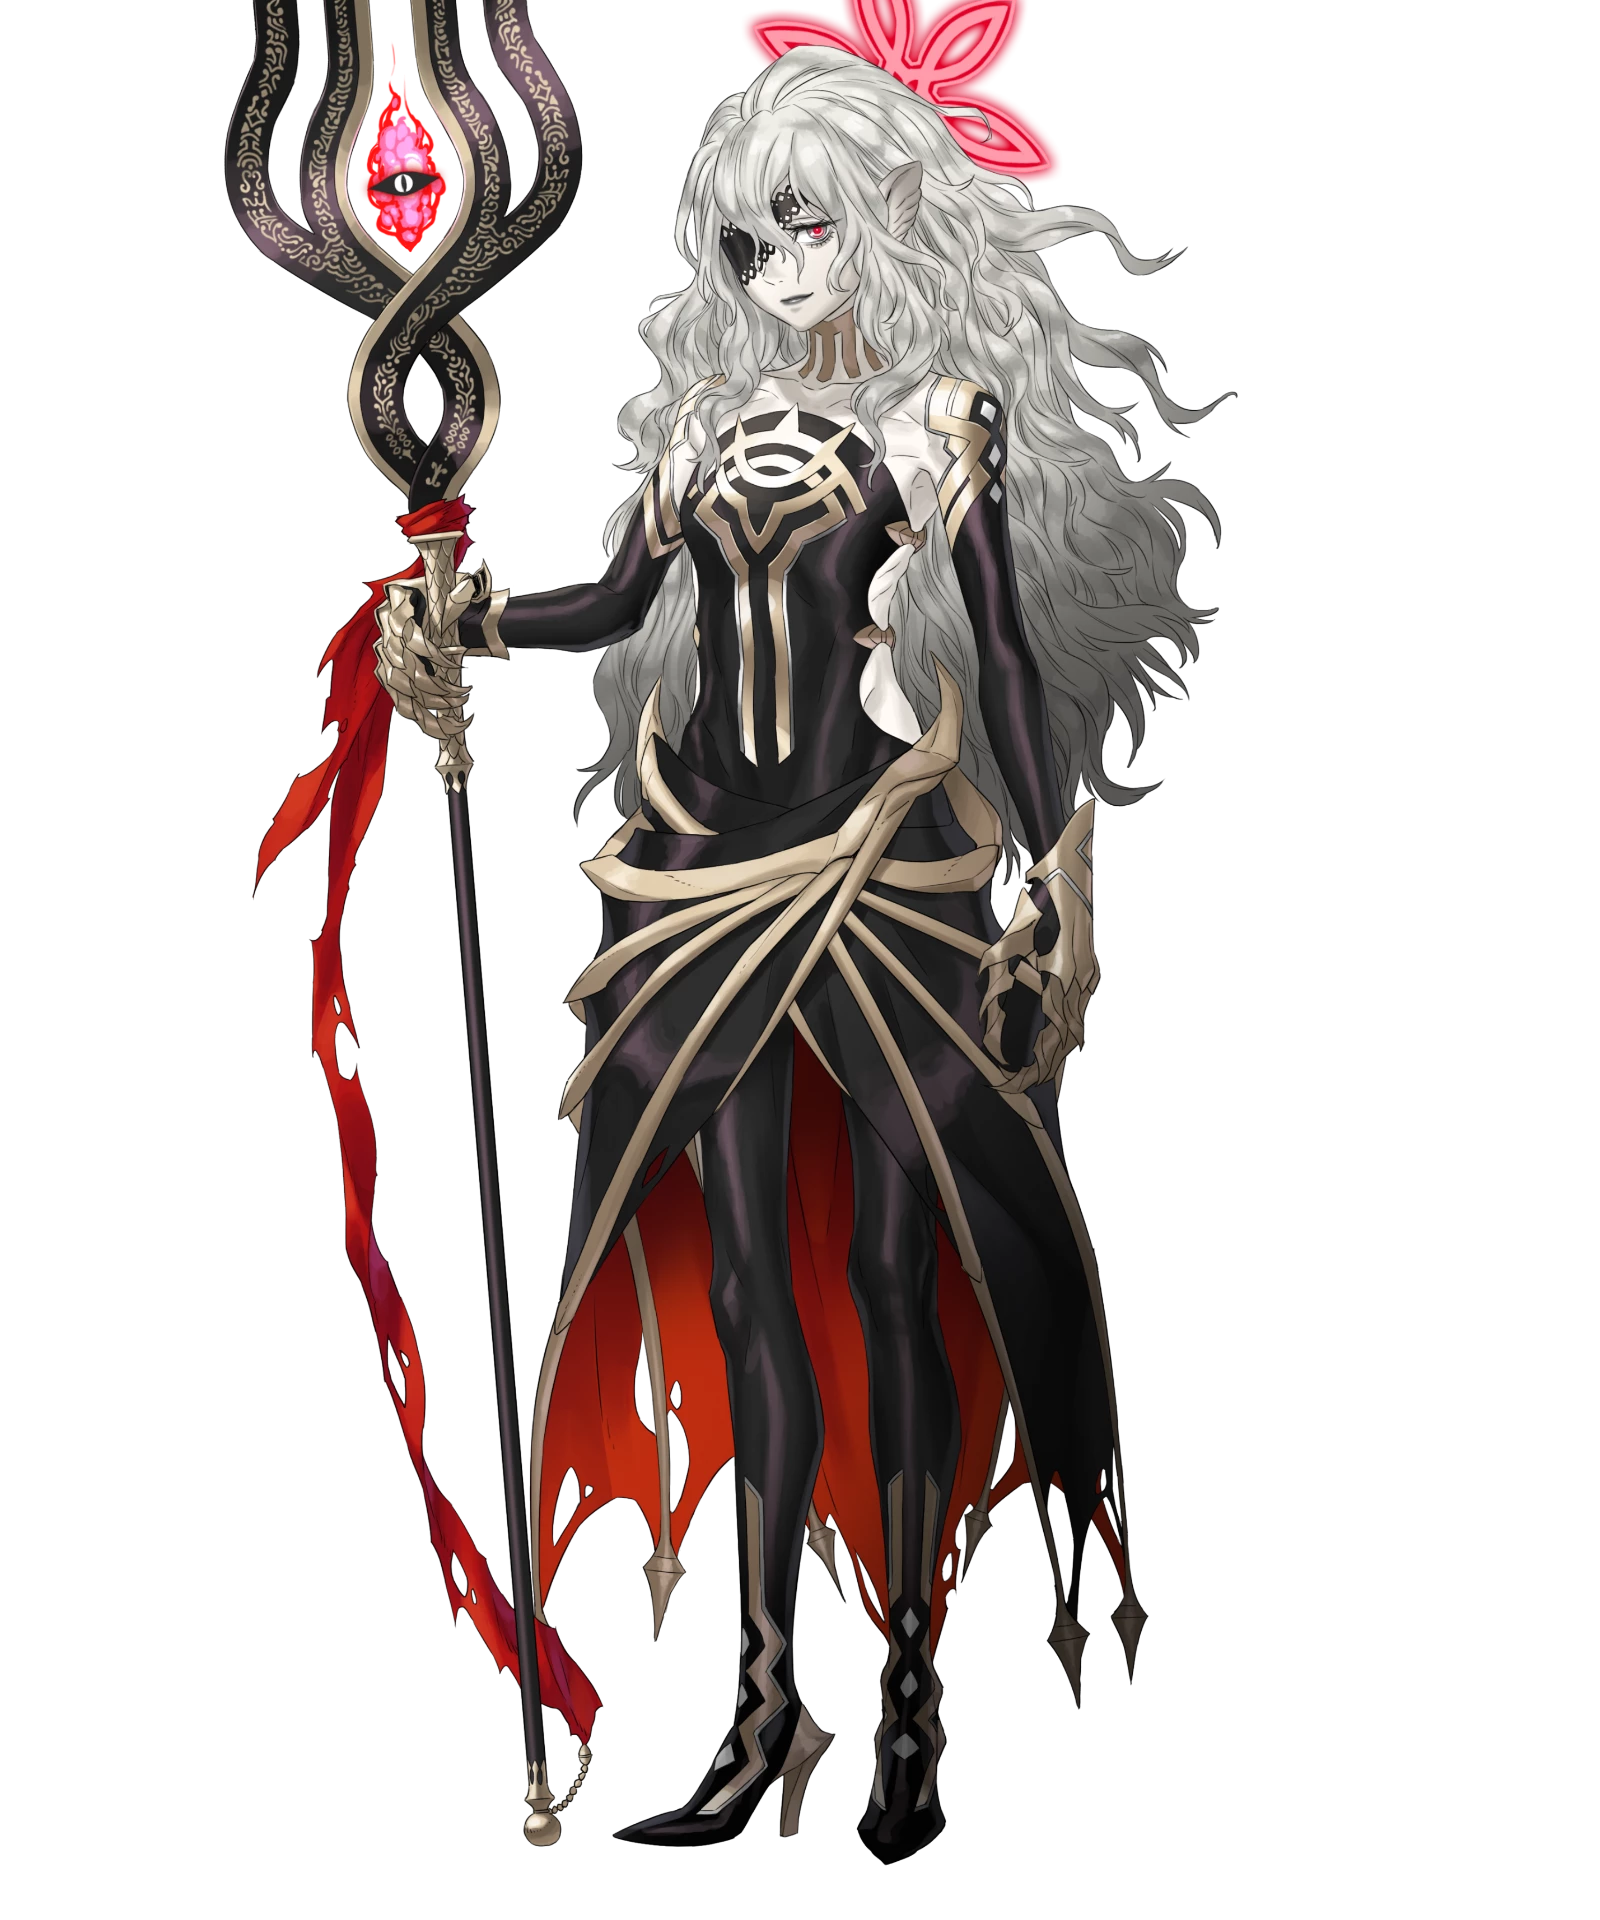 Reina - Fire Emblem Wiki